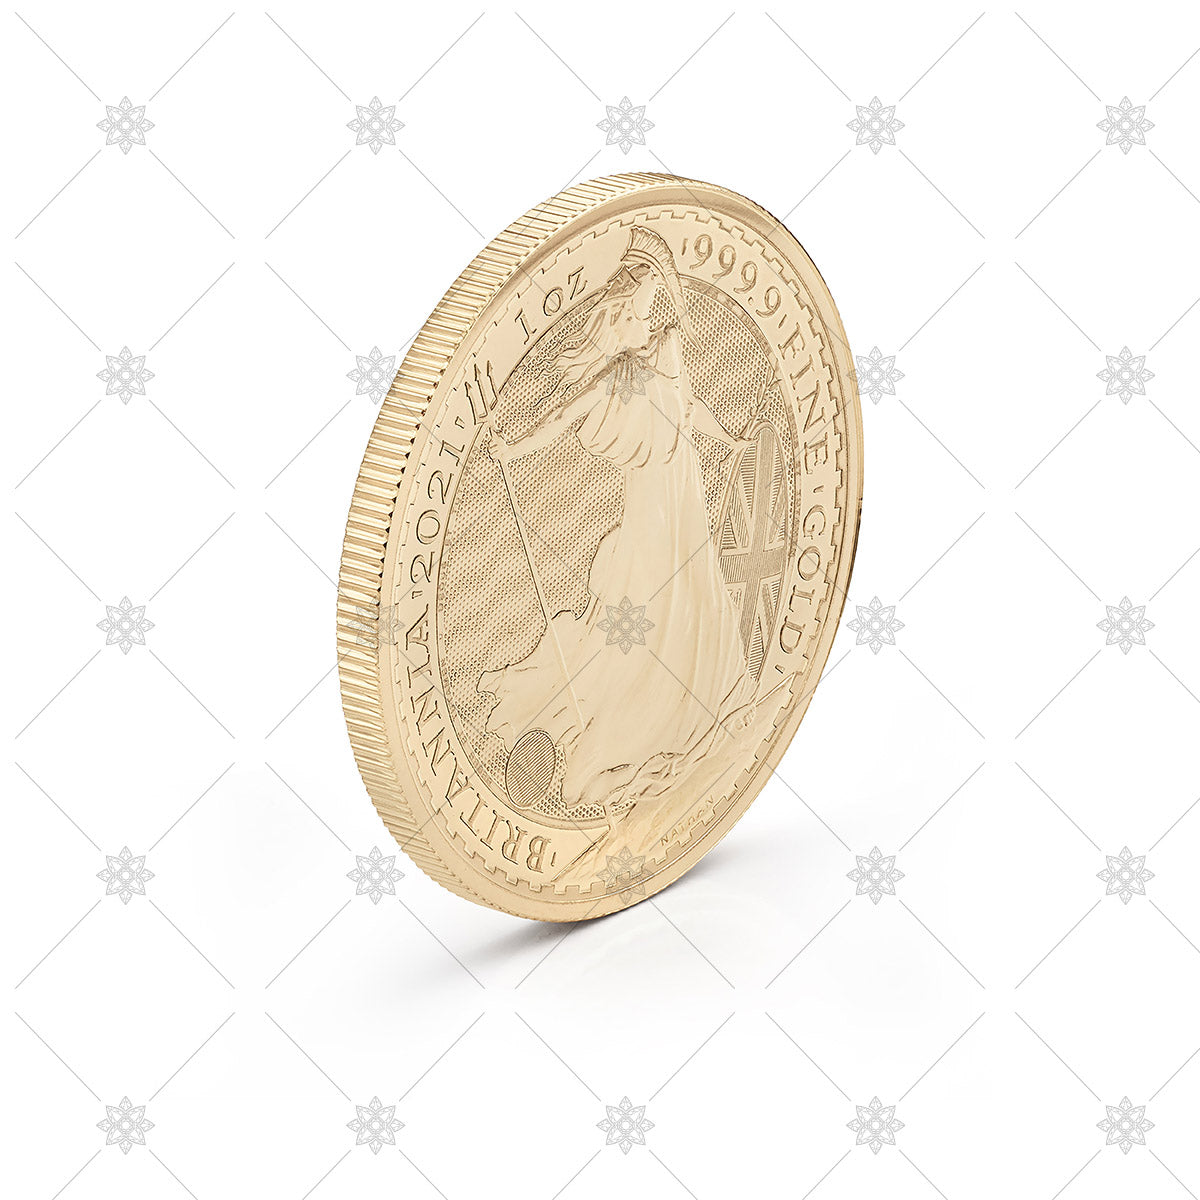 Gold Bullion Coin - JG5109